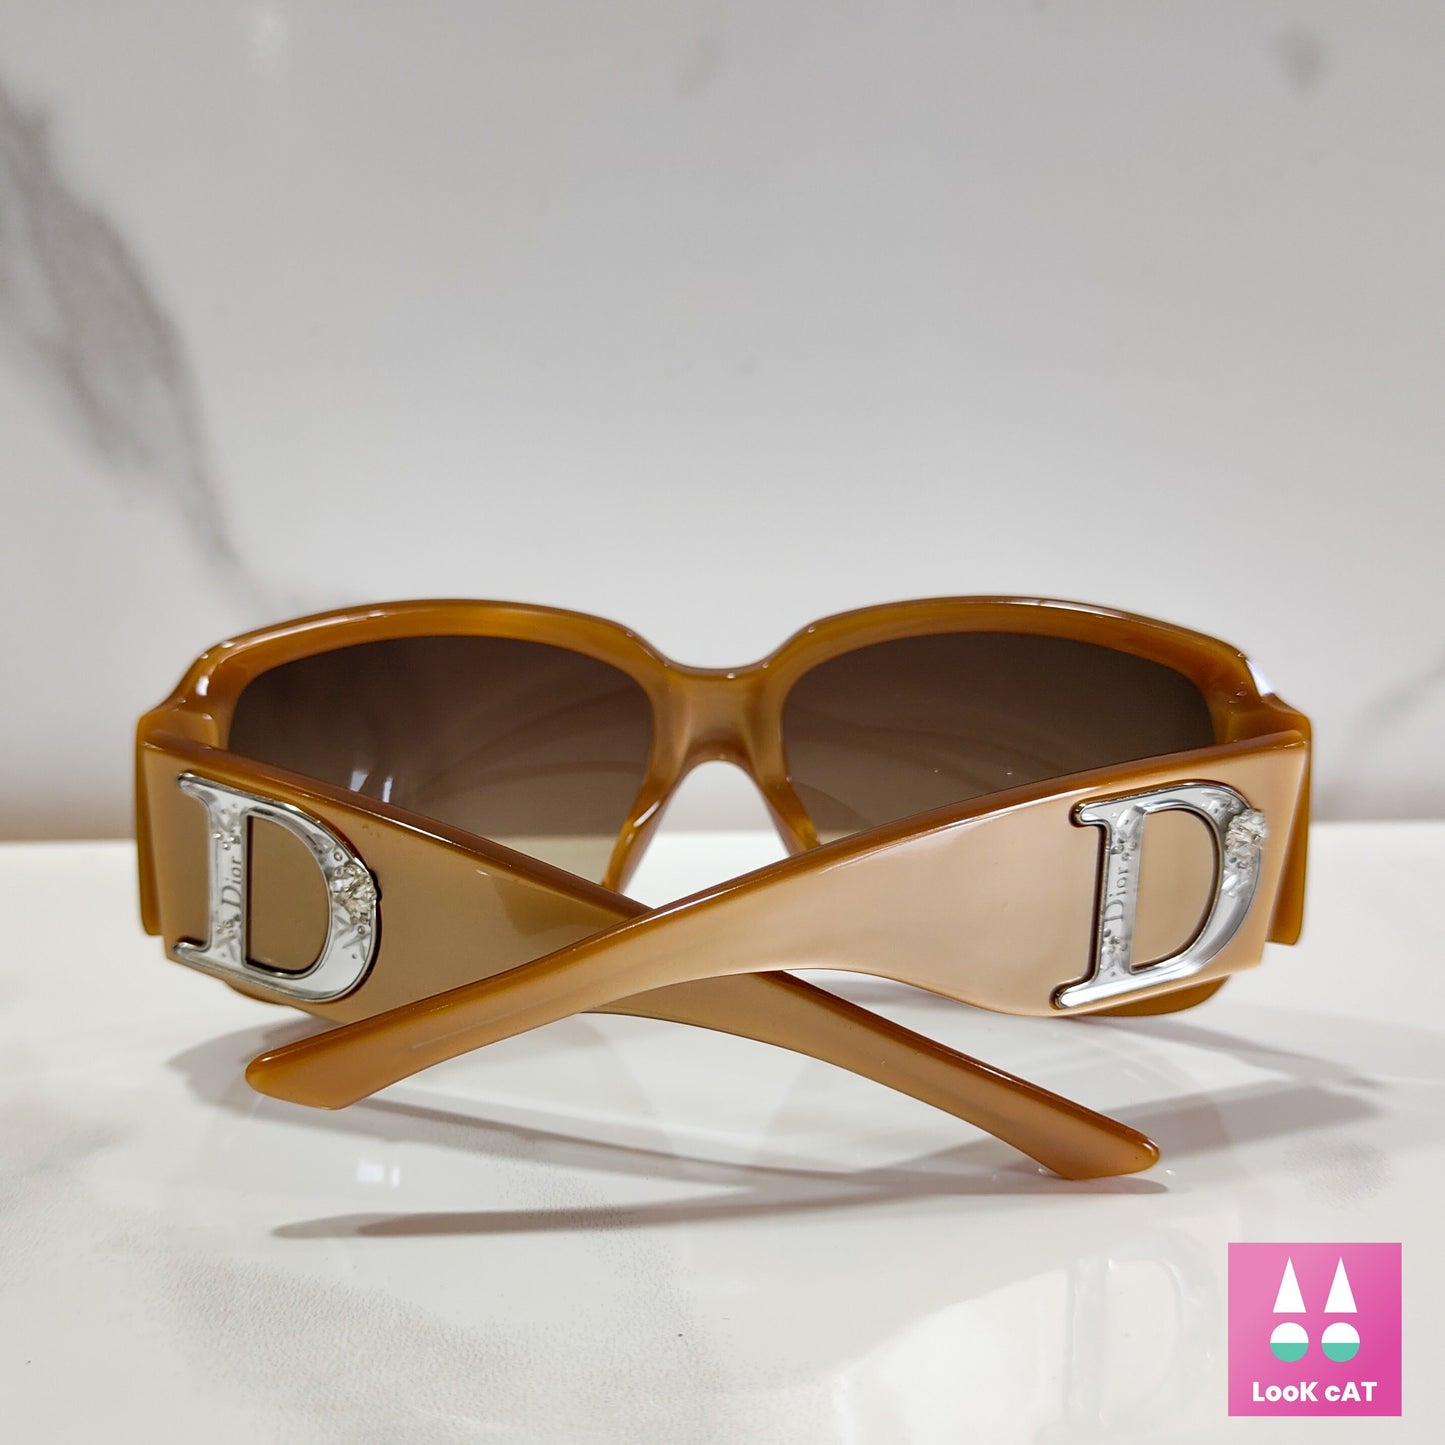 Occhiali da sole vintage Dior Boudoir y2k lunetta occhiali da sole